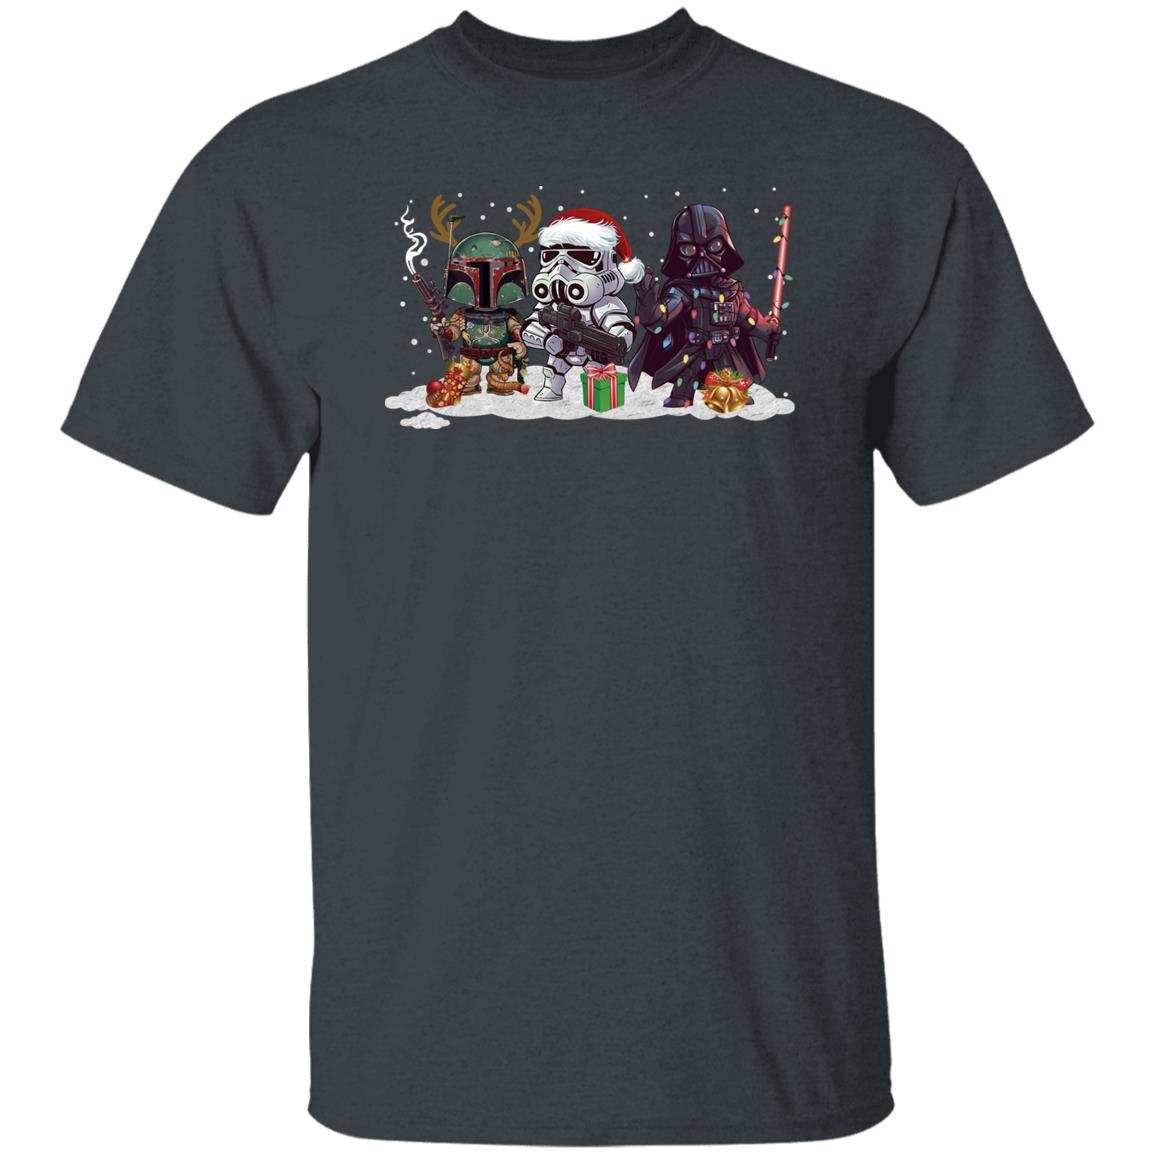 Star Wars Boba Fett Darth Vader And Stormtrooper Chibi Christmas Shirt